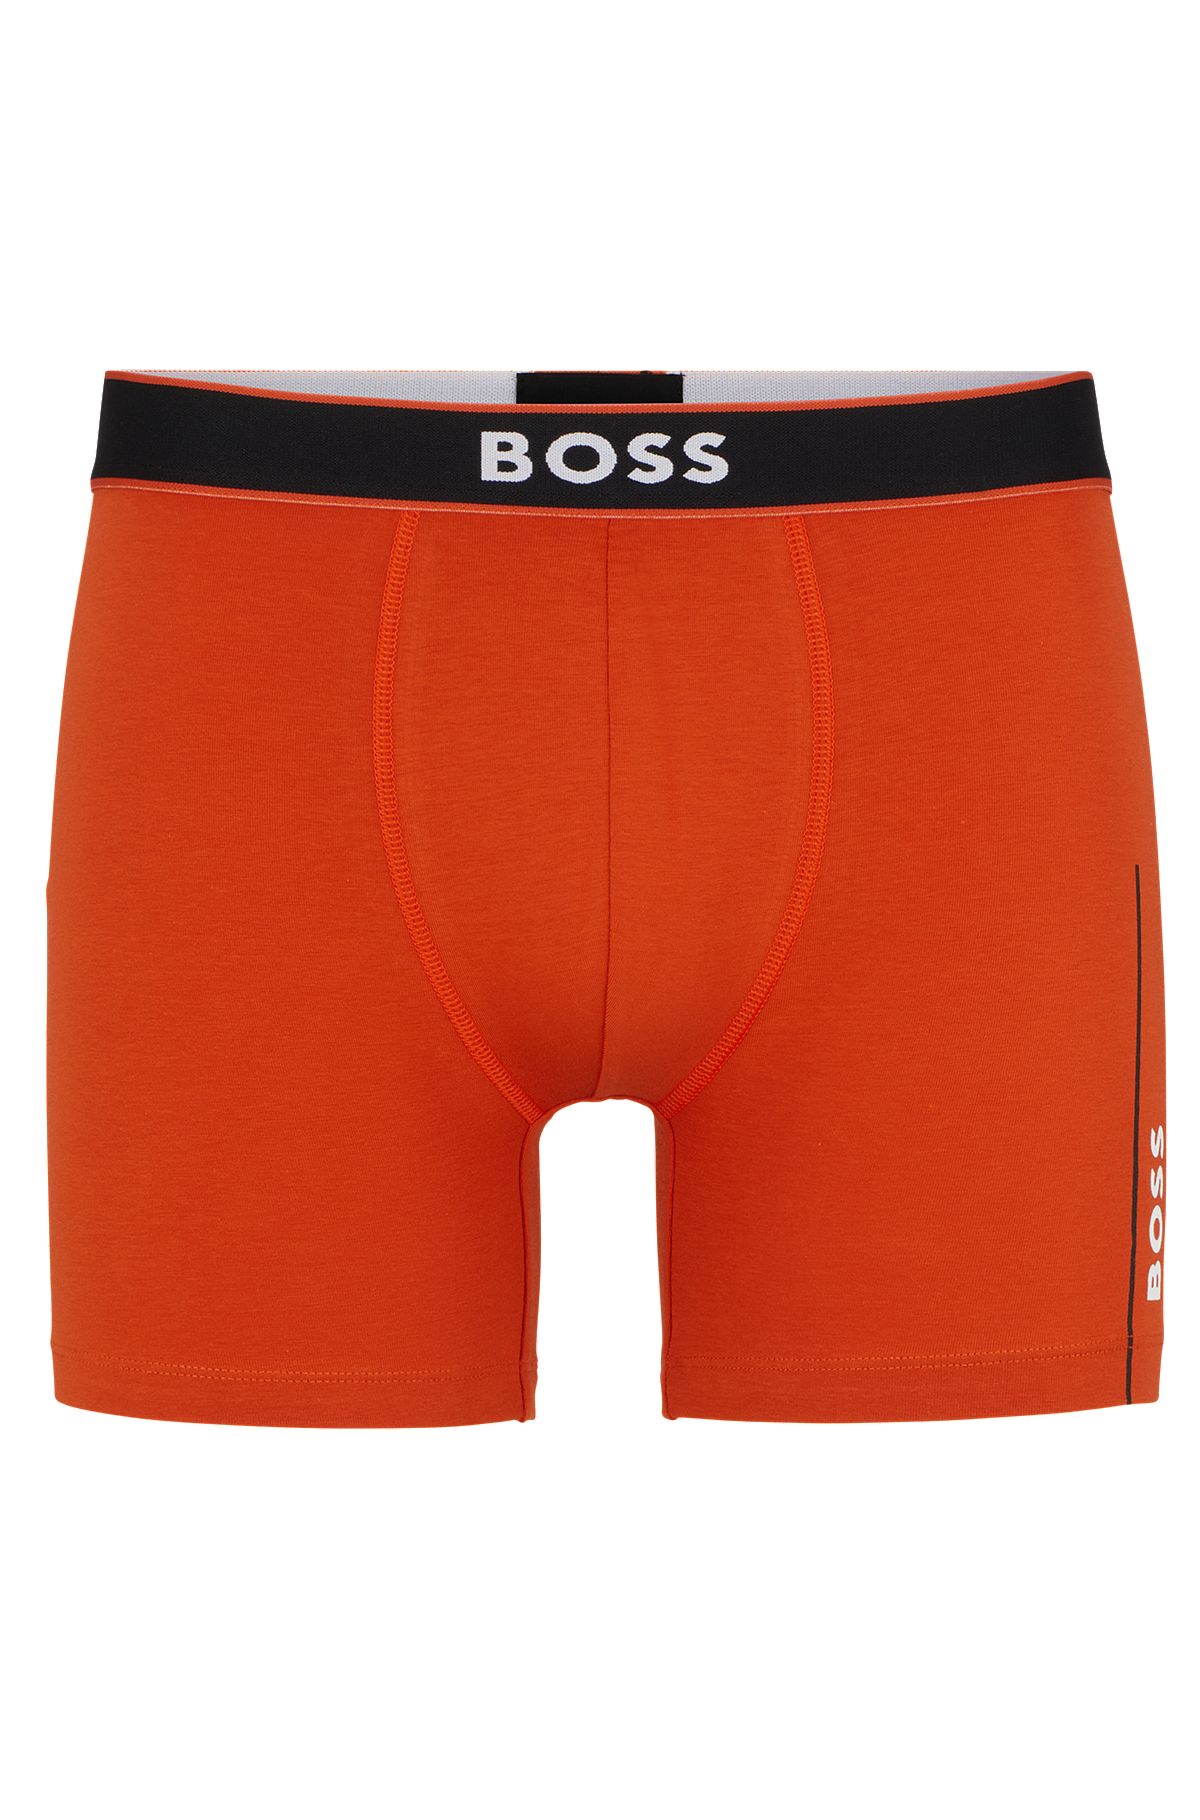 Underwear and Orange BOSS in Nightwear Men | HUGO by